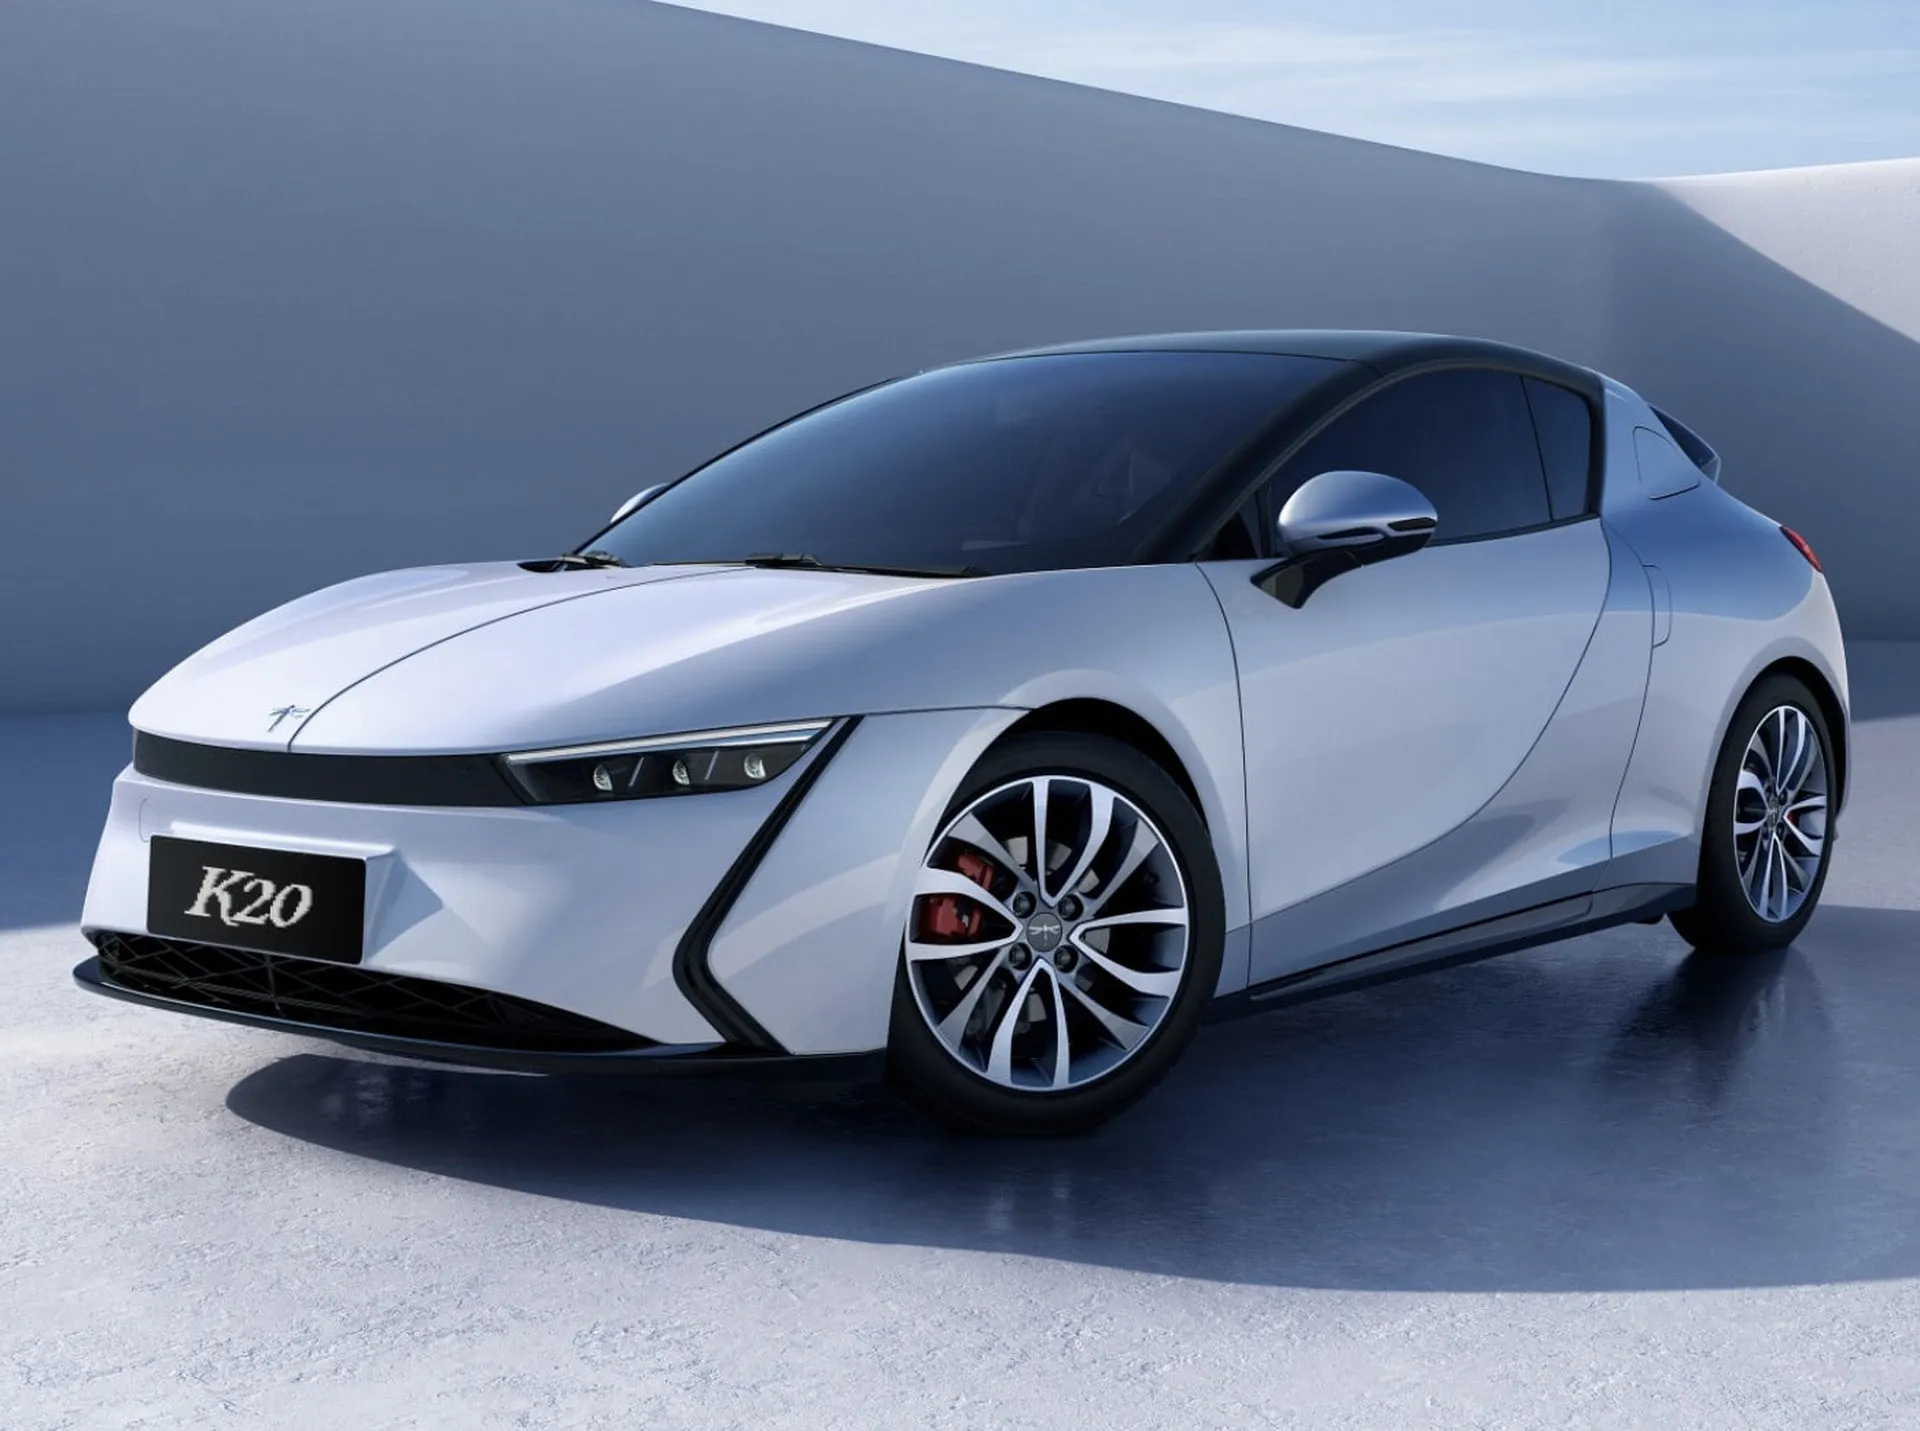 Qiantu K20 : la voiture électrique aux 500 km d'autonomie à moins de 13 000¬, bientôt chez vous ?